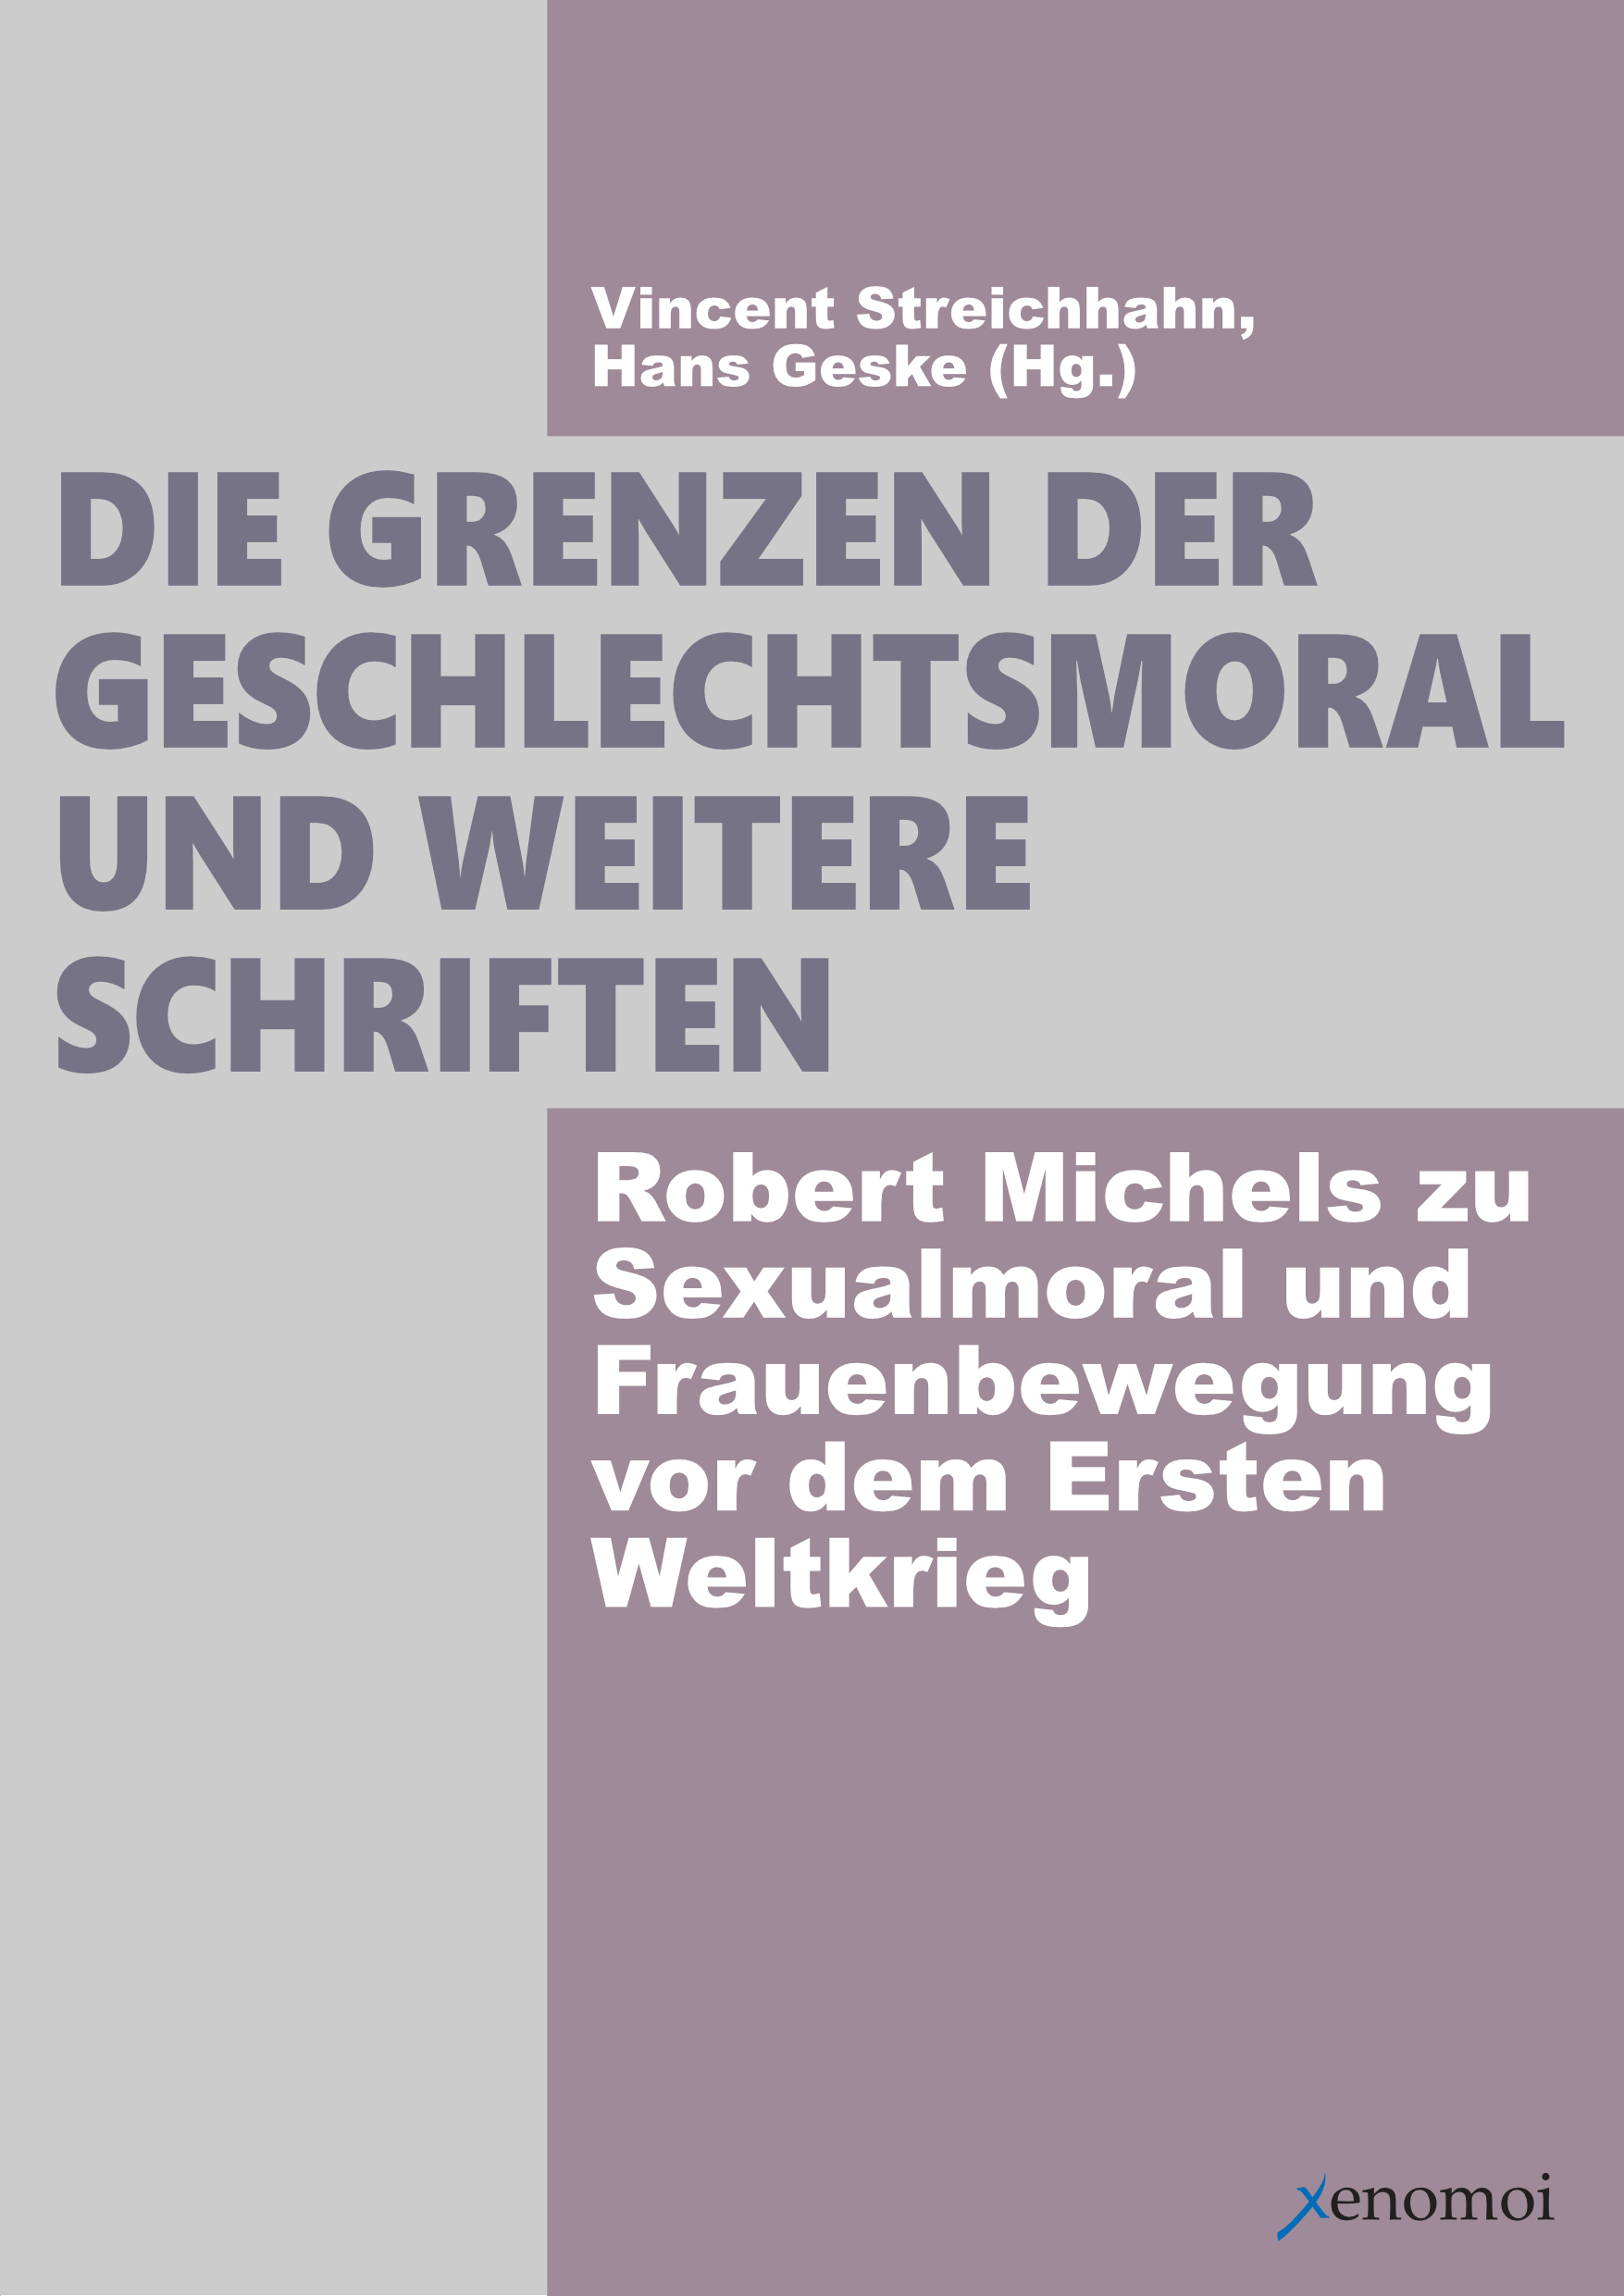 Die Grenzen der Geschlechtsmoral und weitere Schriften. Robert Michels zu Sexualmoral und Frauenbewe